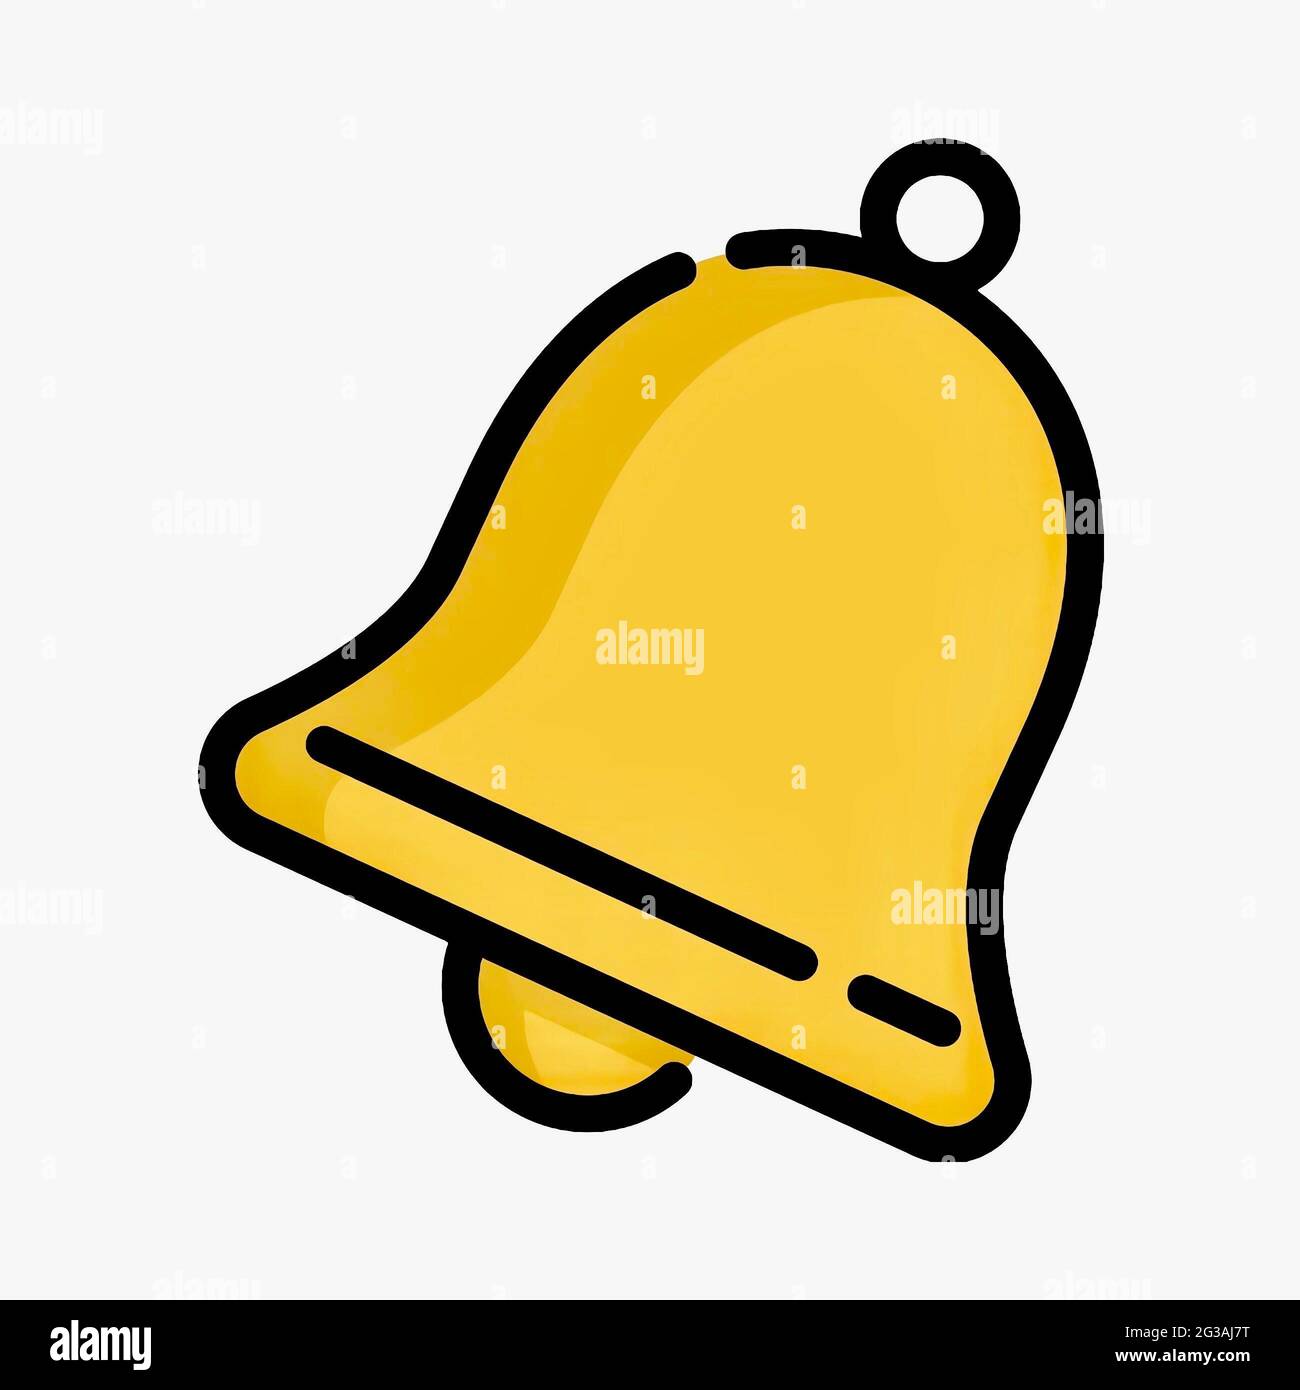 Icona a forma di campanello in stile cartoon isolata su sfondo bianco Foto Stock